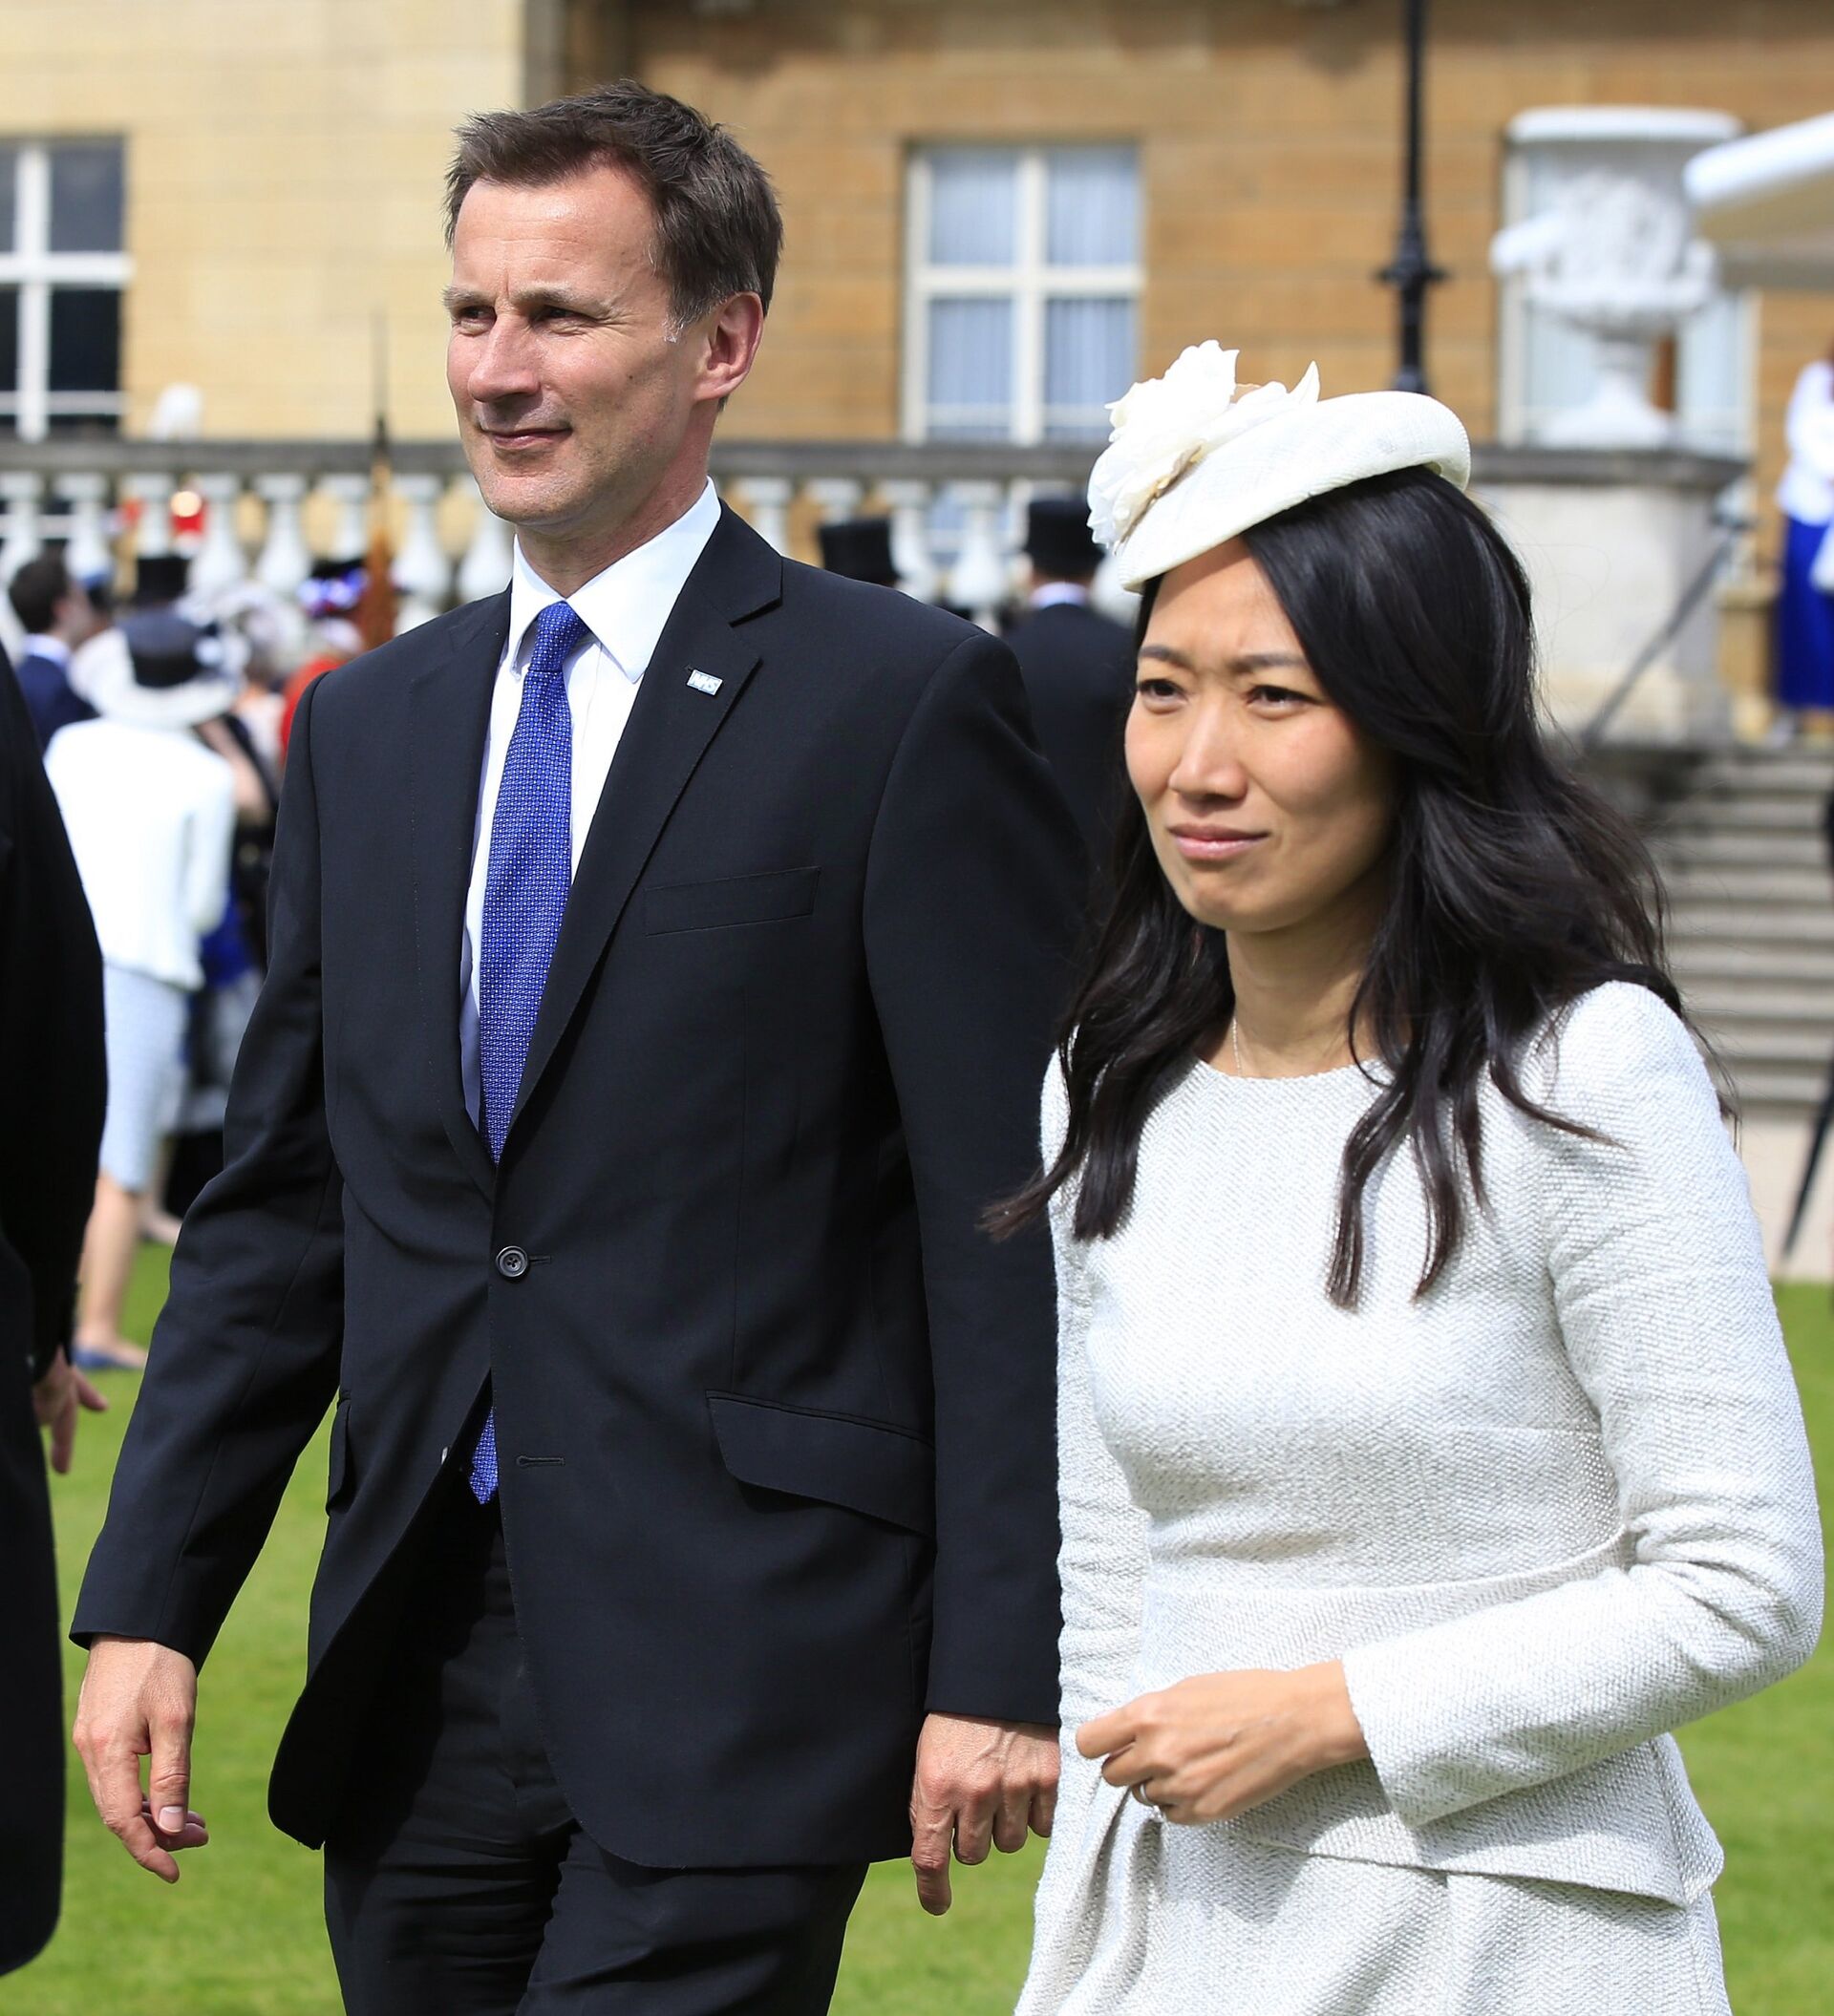 国家主席习近平和夫人彭丽媛在伦敦白金汉宫出席英国女王伊丽莎白二世举行的欢迎晚宴.jpg